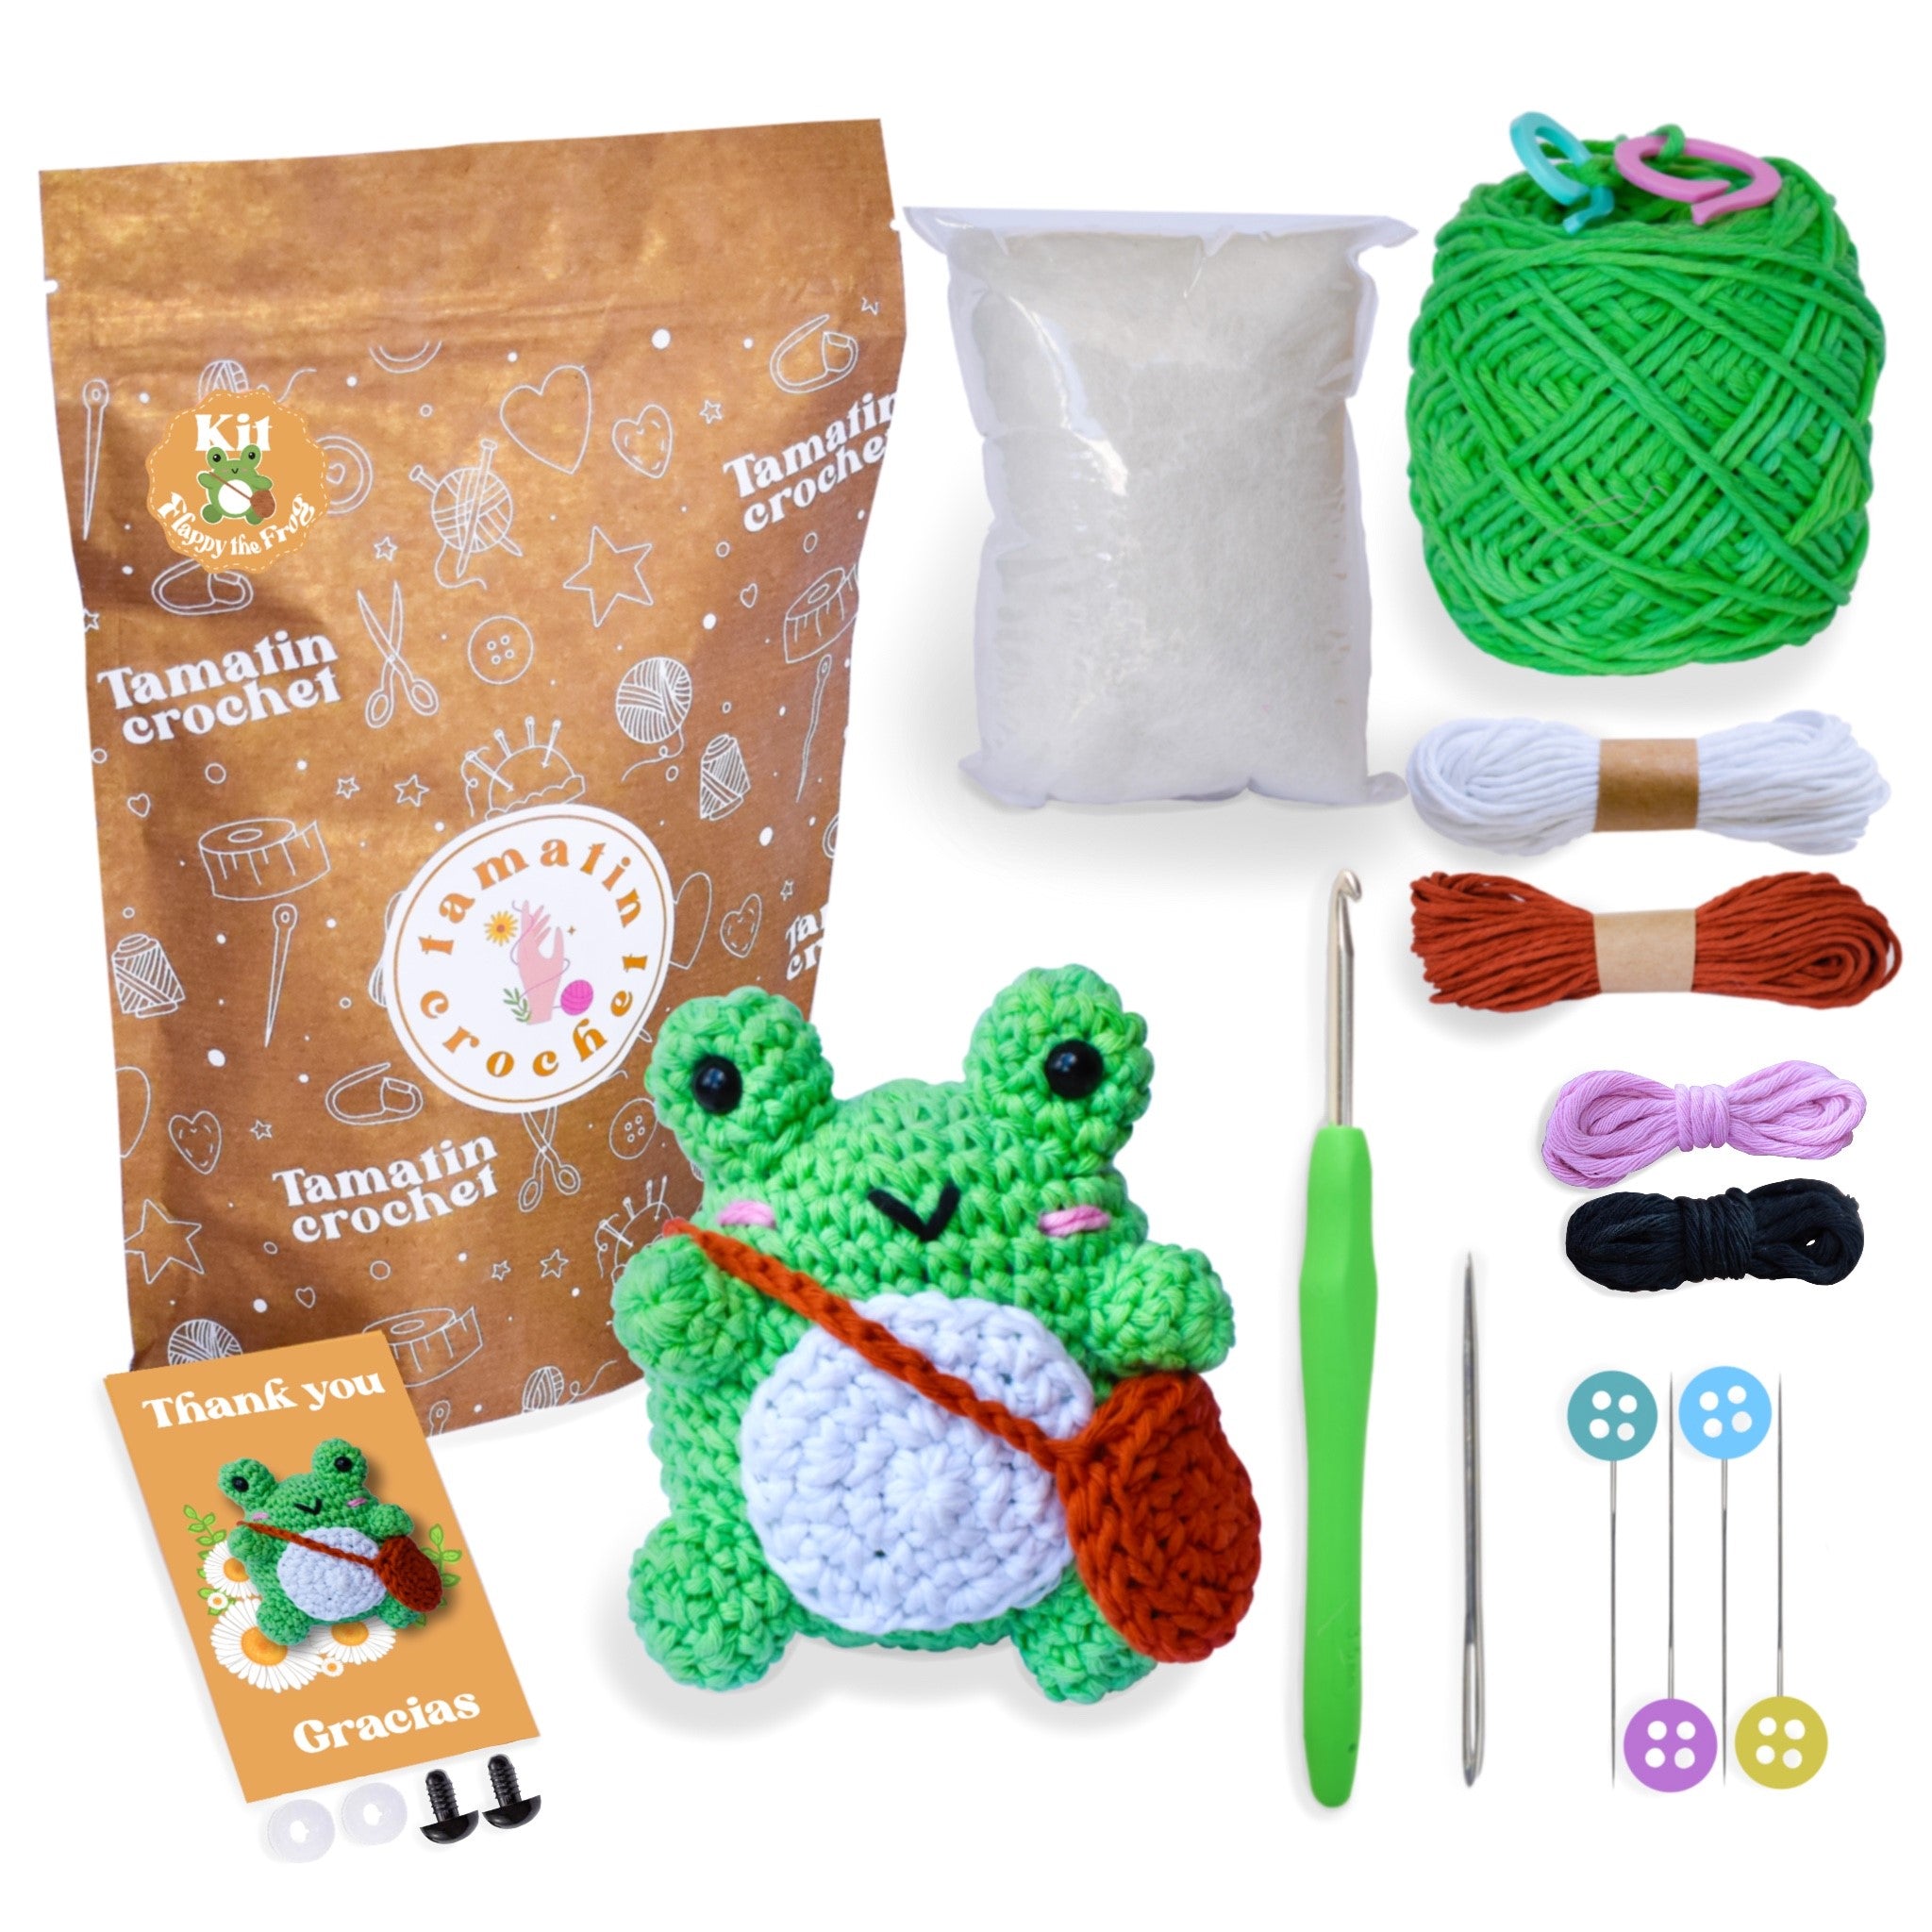 Kit de crochet con todo lo que necesitas para aprender a tejer con Fla –  Tamatincrochet